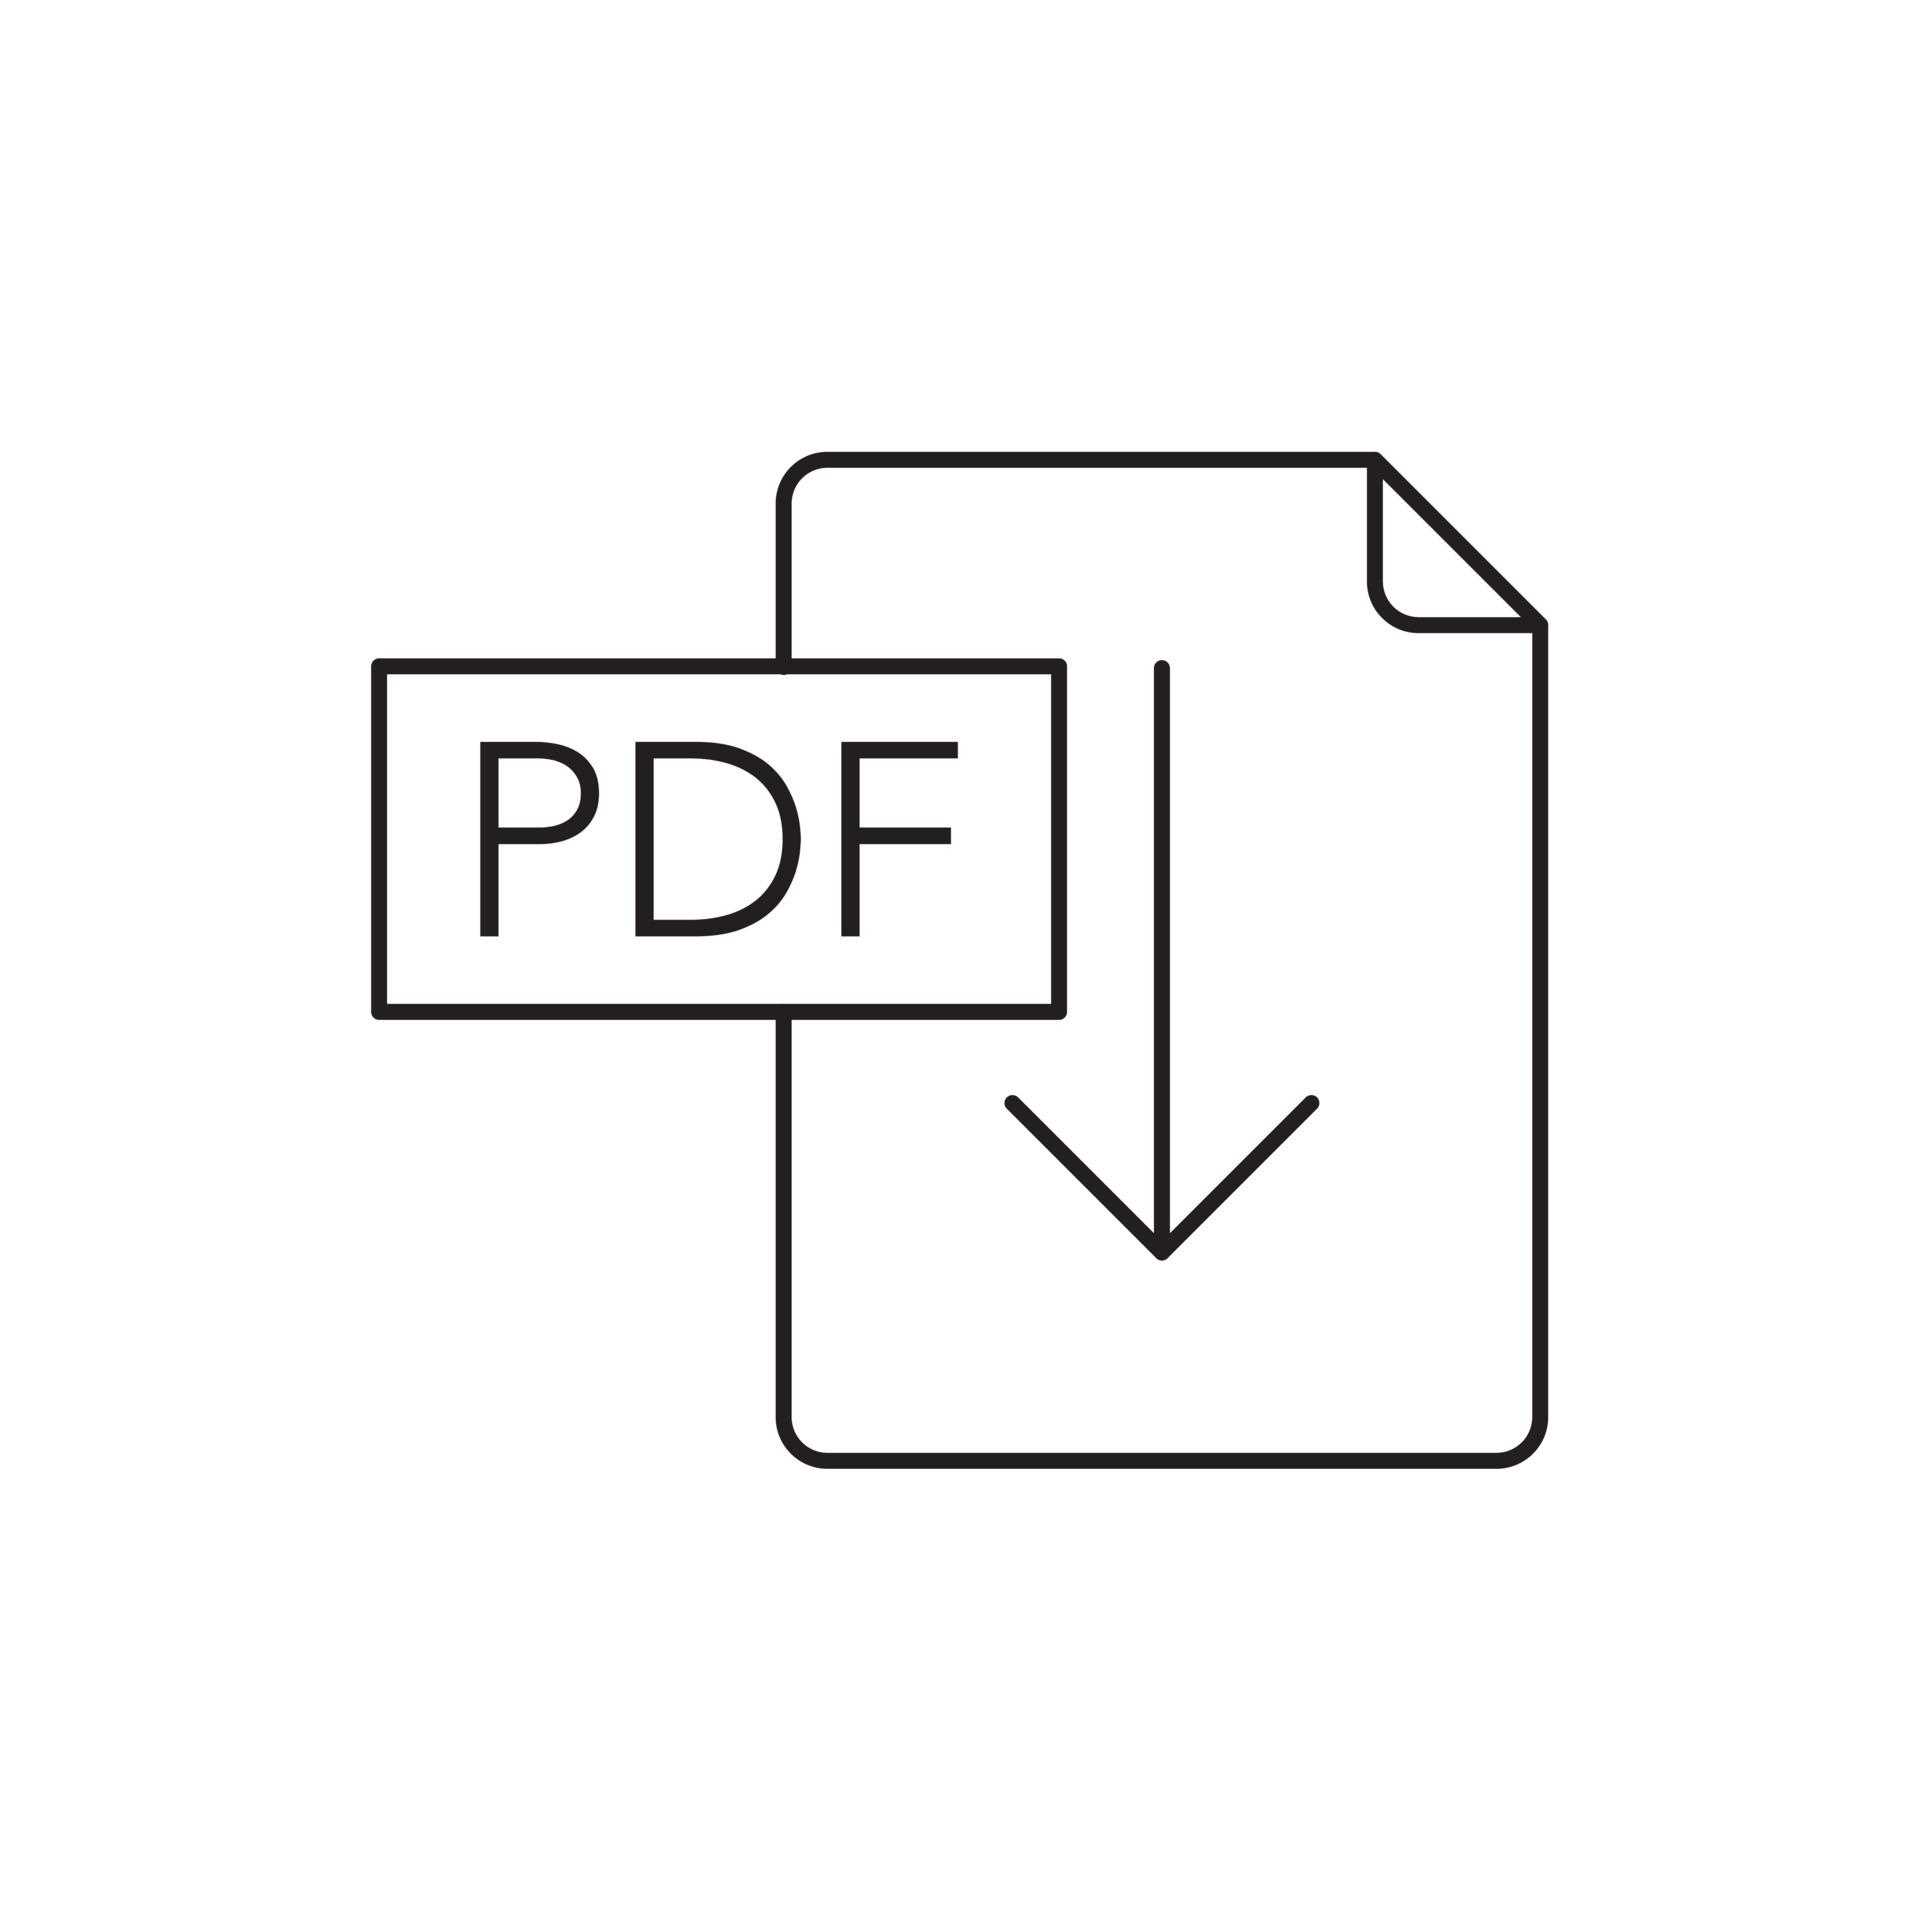 Biểu tượng tải xuống PDF màu đen sẽ giúp bạn tạo ra một trải nghiệm người dùng thuận tiện và dễ dàng hơn với định dạng tệp PDF. Với chức năng xuất sắc của nó, biểu tượng tải xuống PDF màu đen sẽ là giải pháp hoàn hảo để thu hút người dùng đến với tài liệu của bạn.